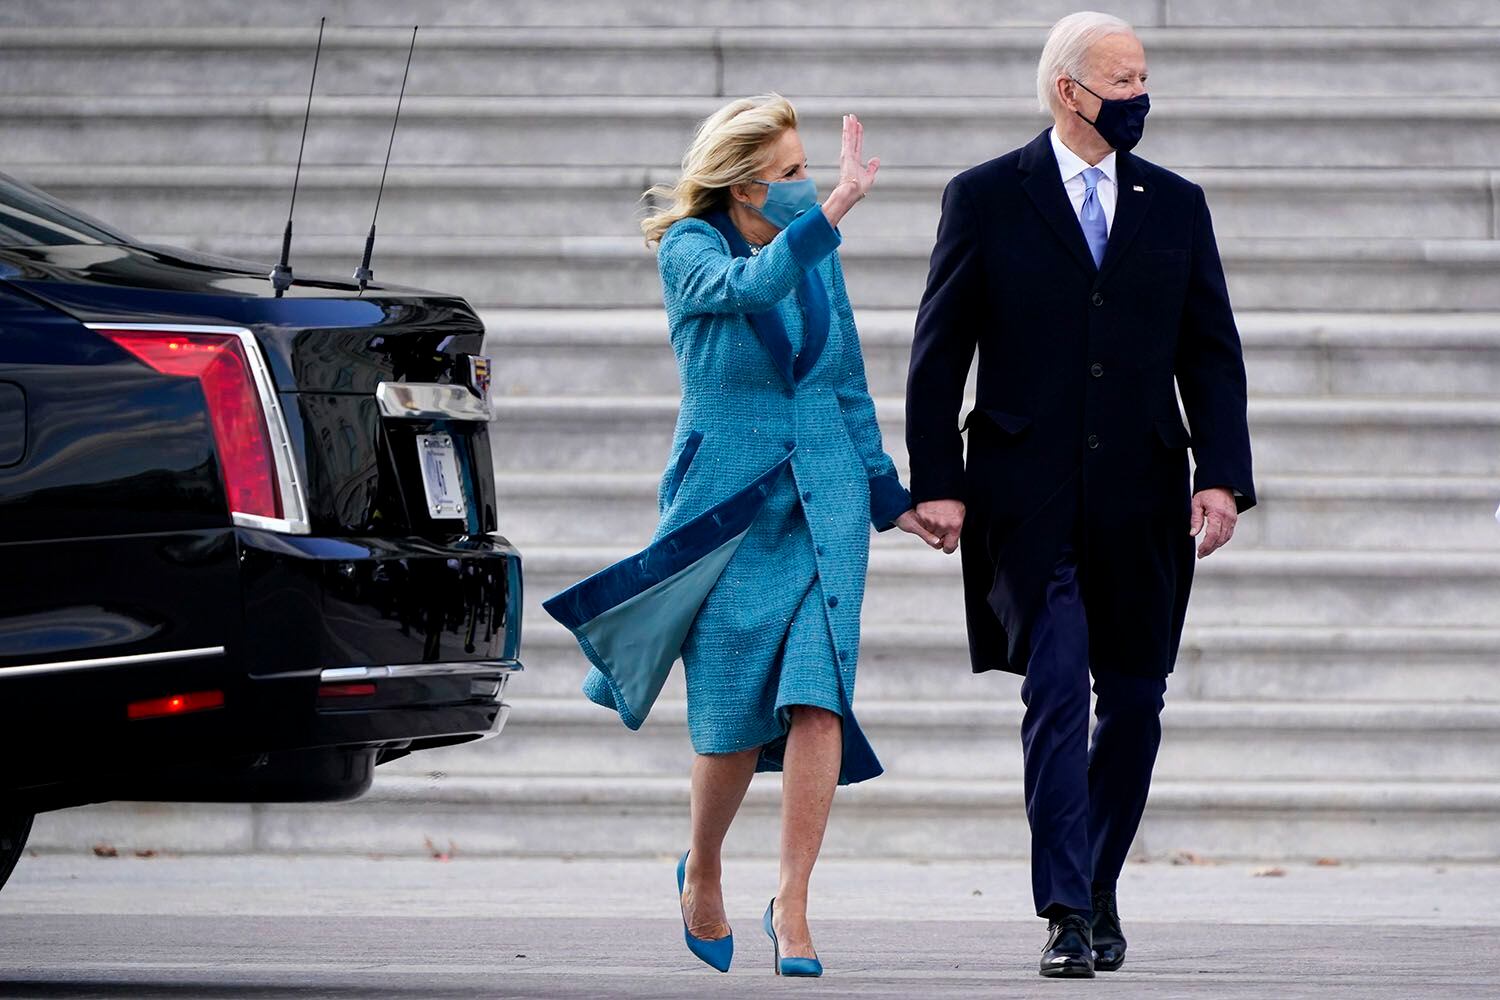 El presidente Joe Biden y su esposa Jill Biden salen del Capitolio tras ver un desfile militar en el frente Este del Capitolio al final de la ceremonia de investidura en Washington, el miércoles 20 de enero de 2021. (Foto AP/J. Scott Applewhite)